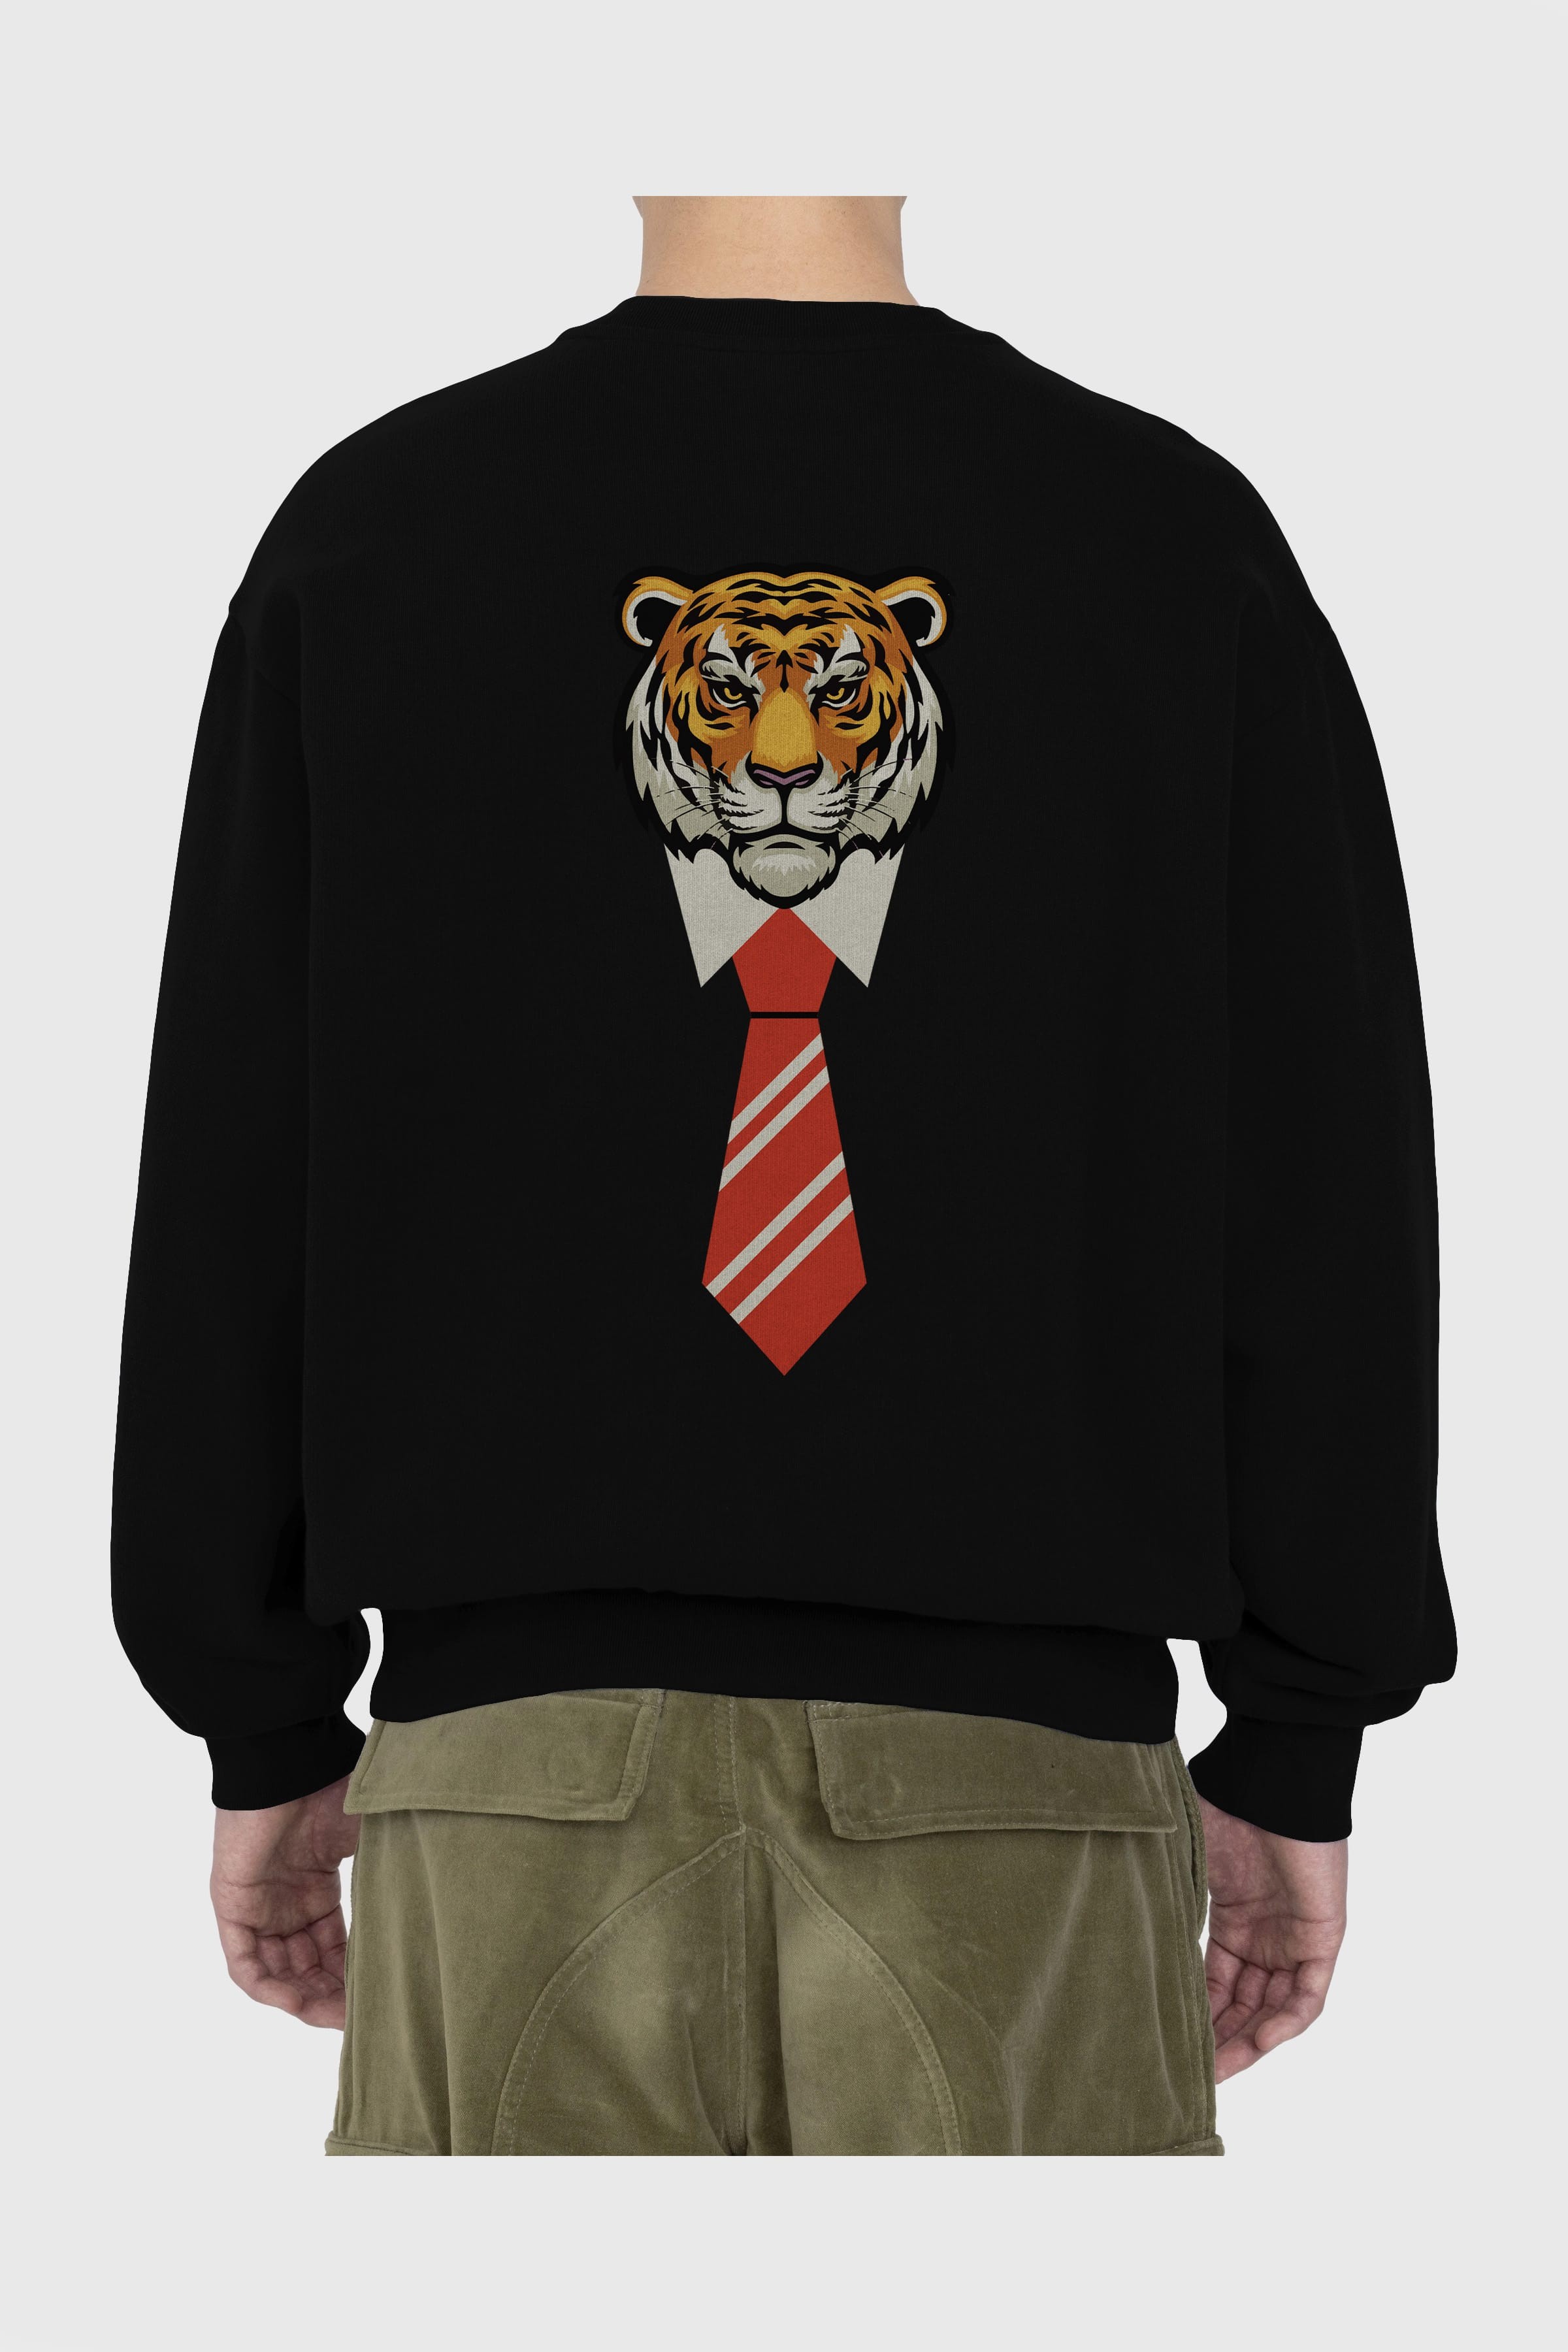 Tiger With Tie Arka Baskılı Oversize Sweatshirt Erkek Kadın Unisex